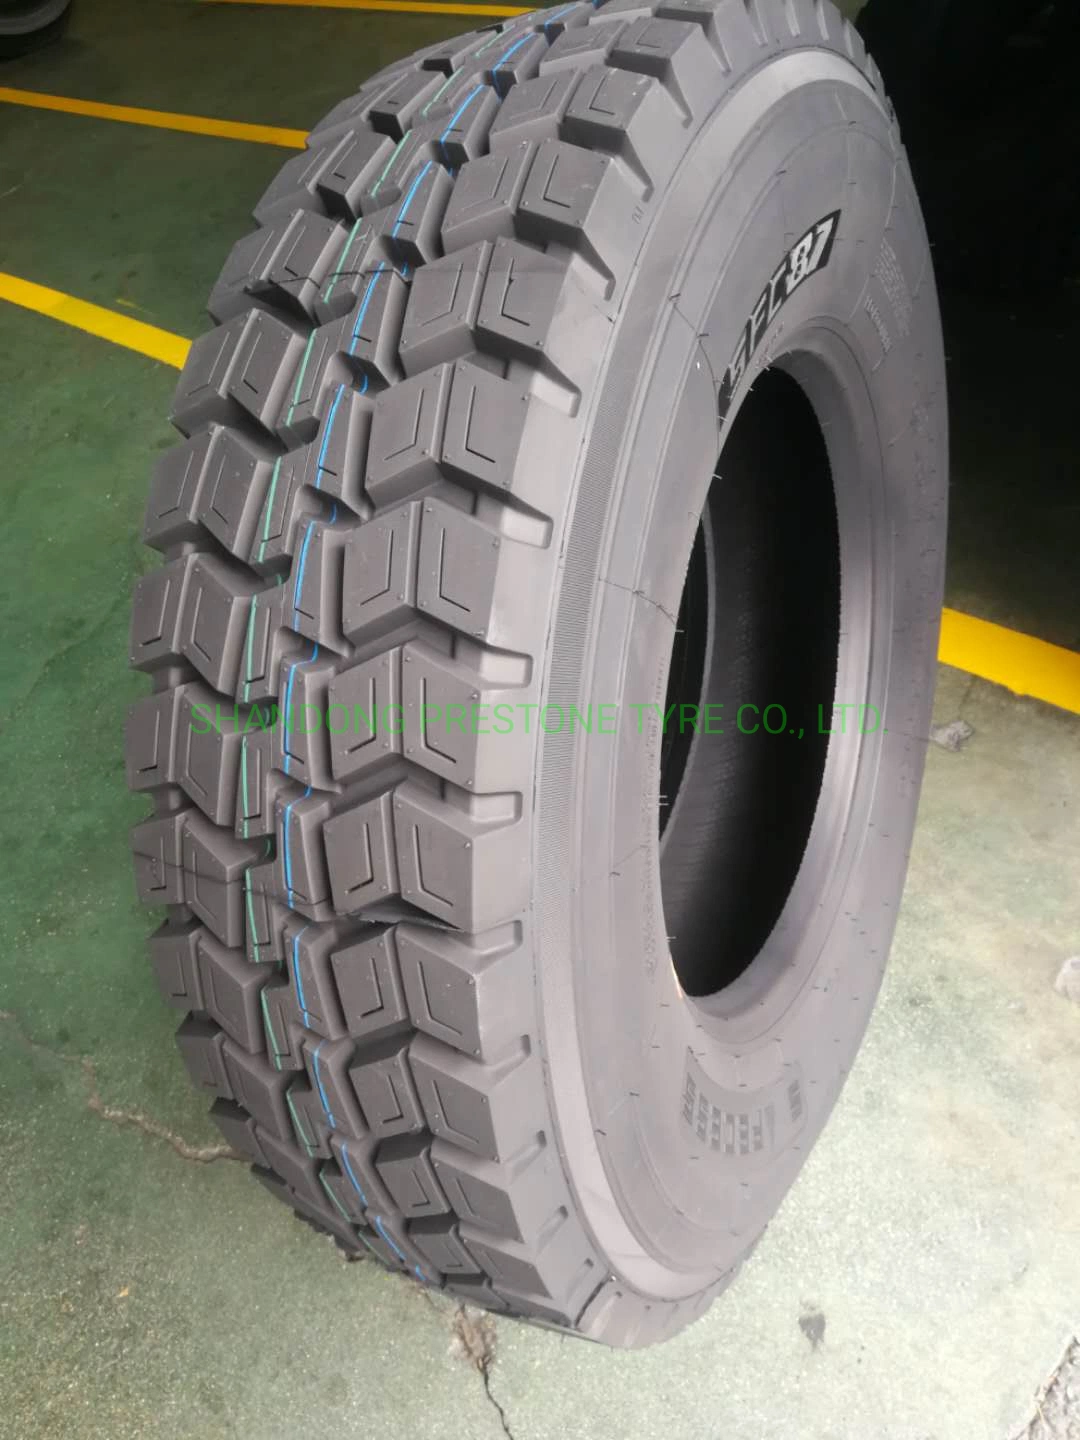 Bonne qualité prix bon marché Firemax Safecess Invovic pneus de camion de marque TBR 315/80R22.5 385/65R22.5 12.00R24 11r22.5 13r22.5